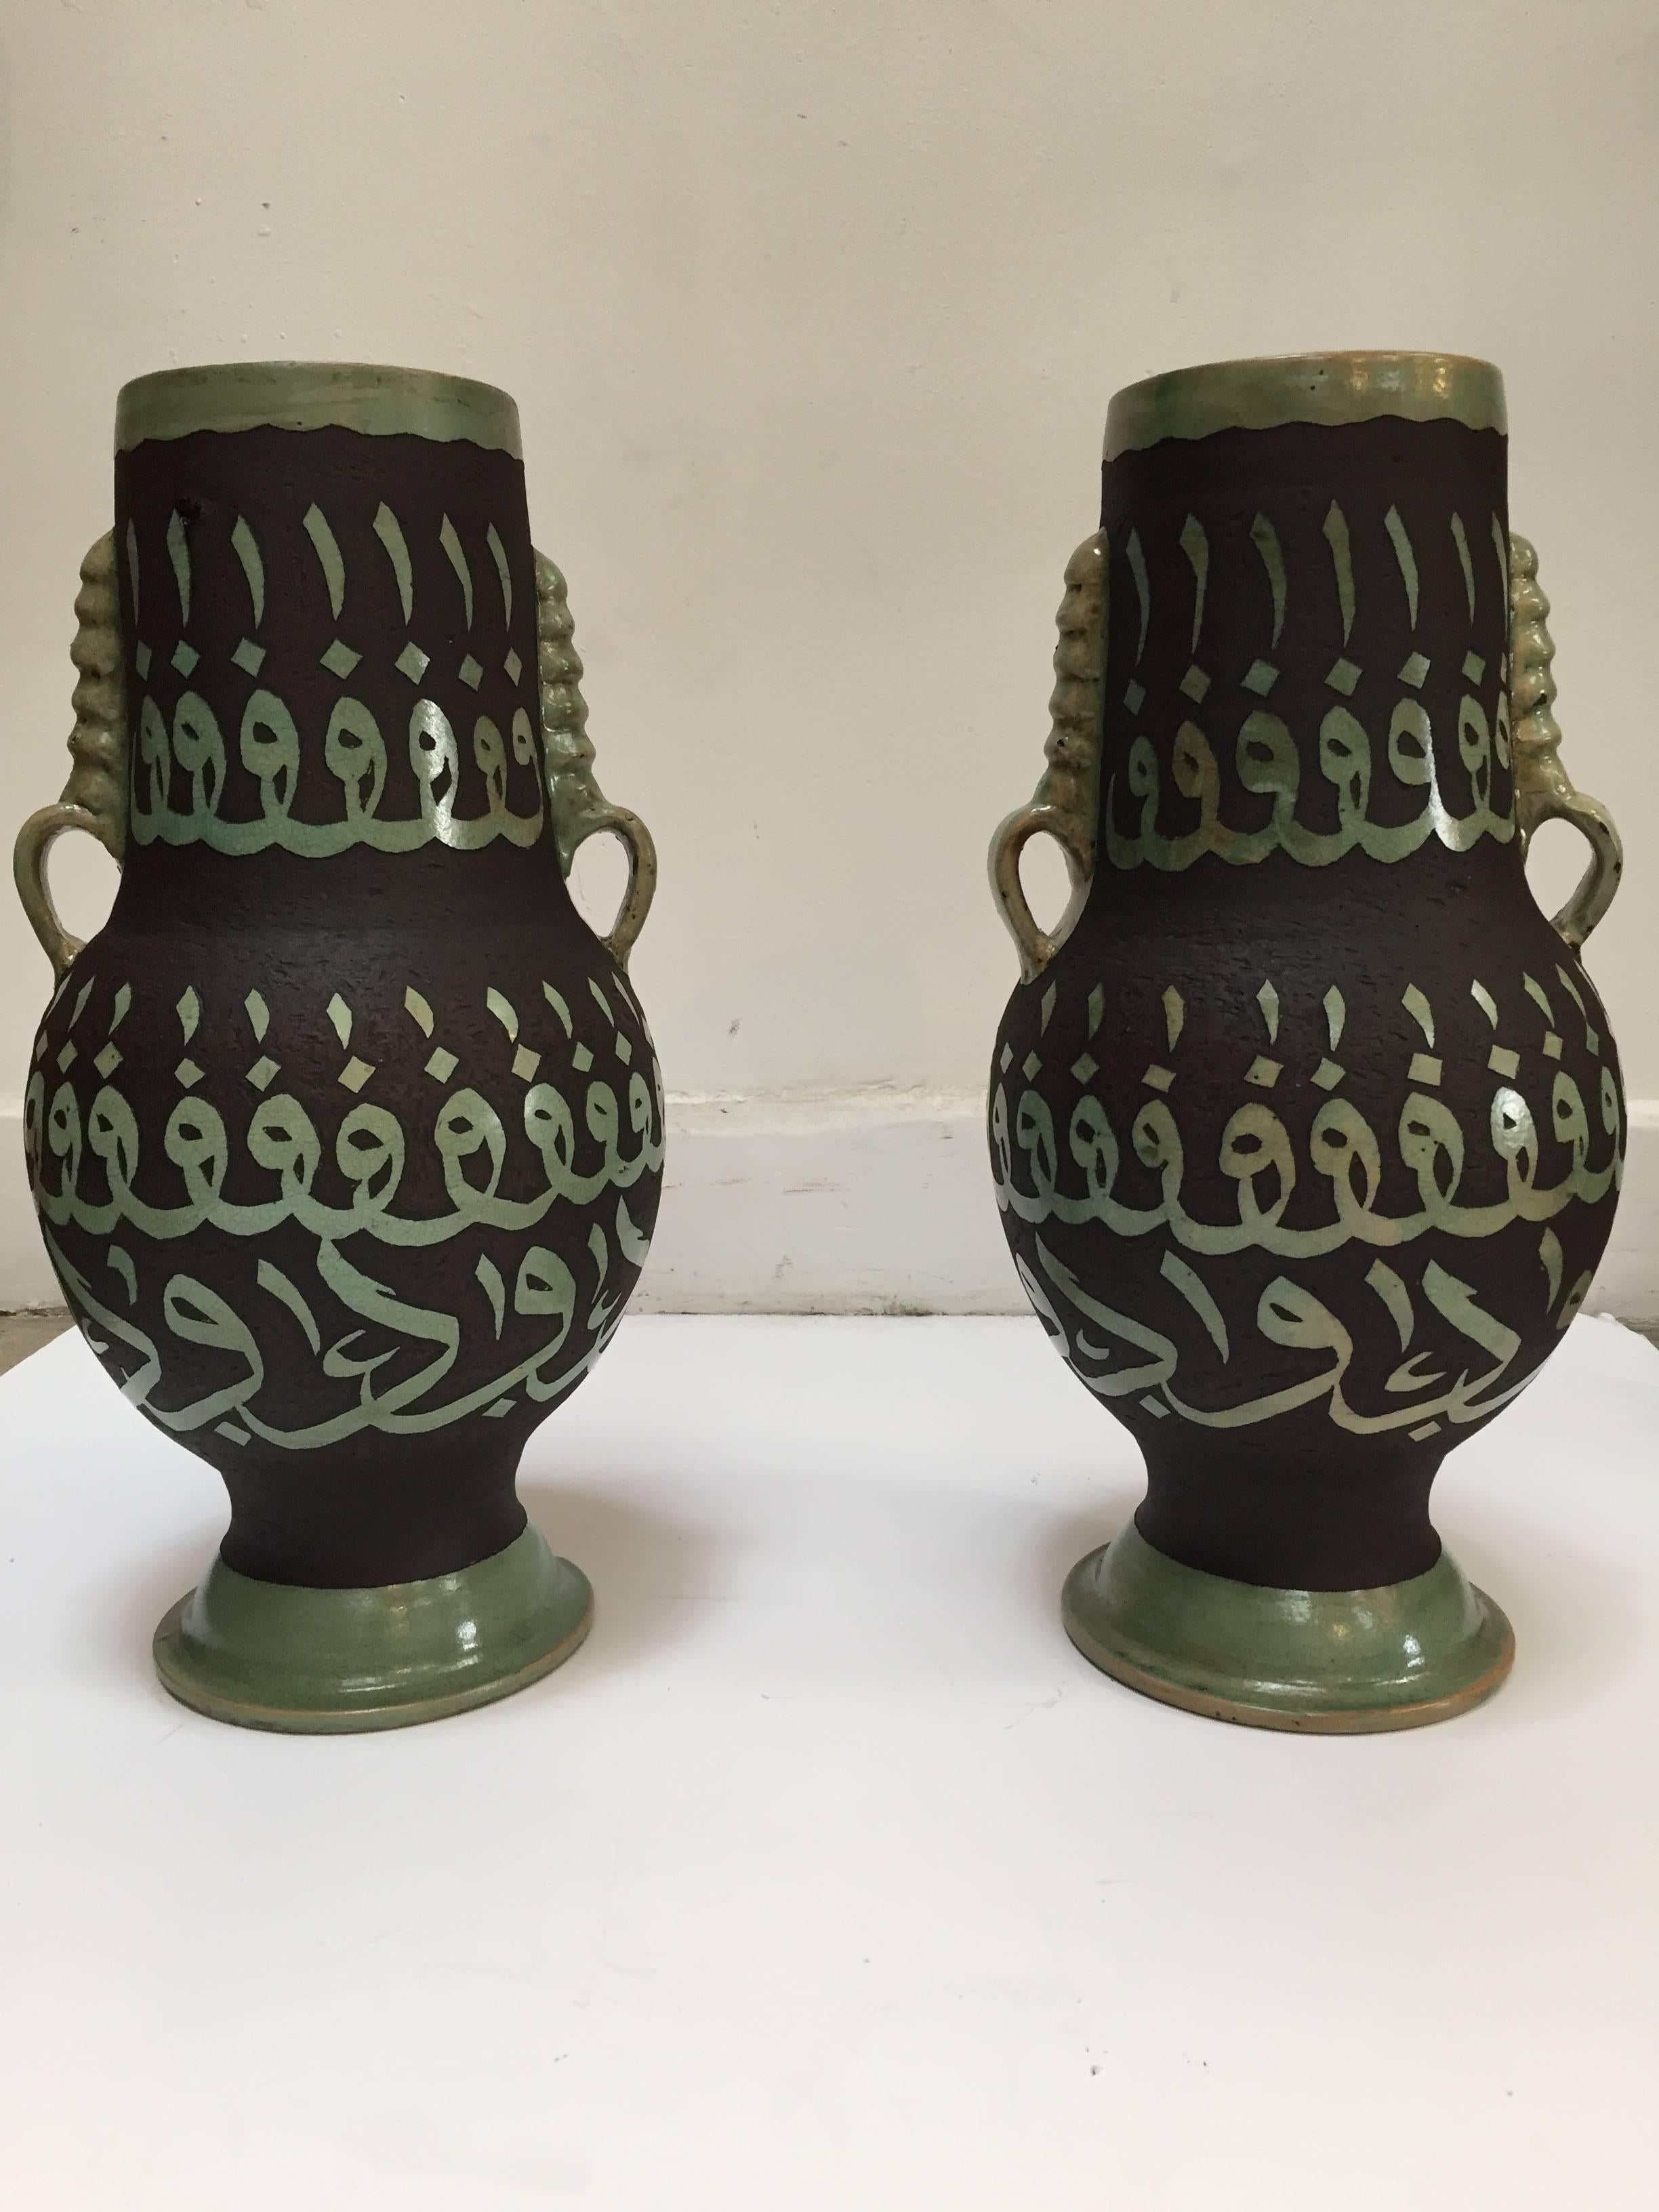 Paire de vases très décoratifs en céramique marocaine chocalate brun et jade vert avec poignées de Fès.
Gravé à la main et ciselé avec une calligraphie verte de l'alphabet arabe.
L'ouverture est de 5 pouces.
Ce type d'œuvre d'art mauresque en